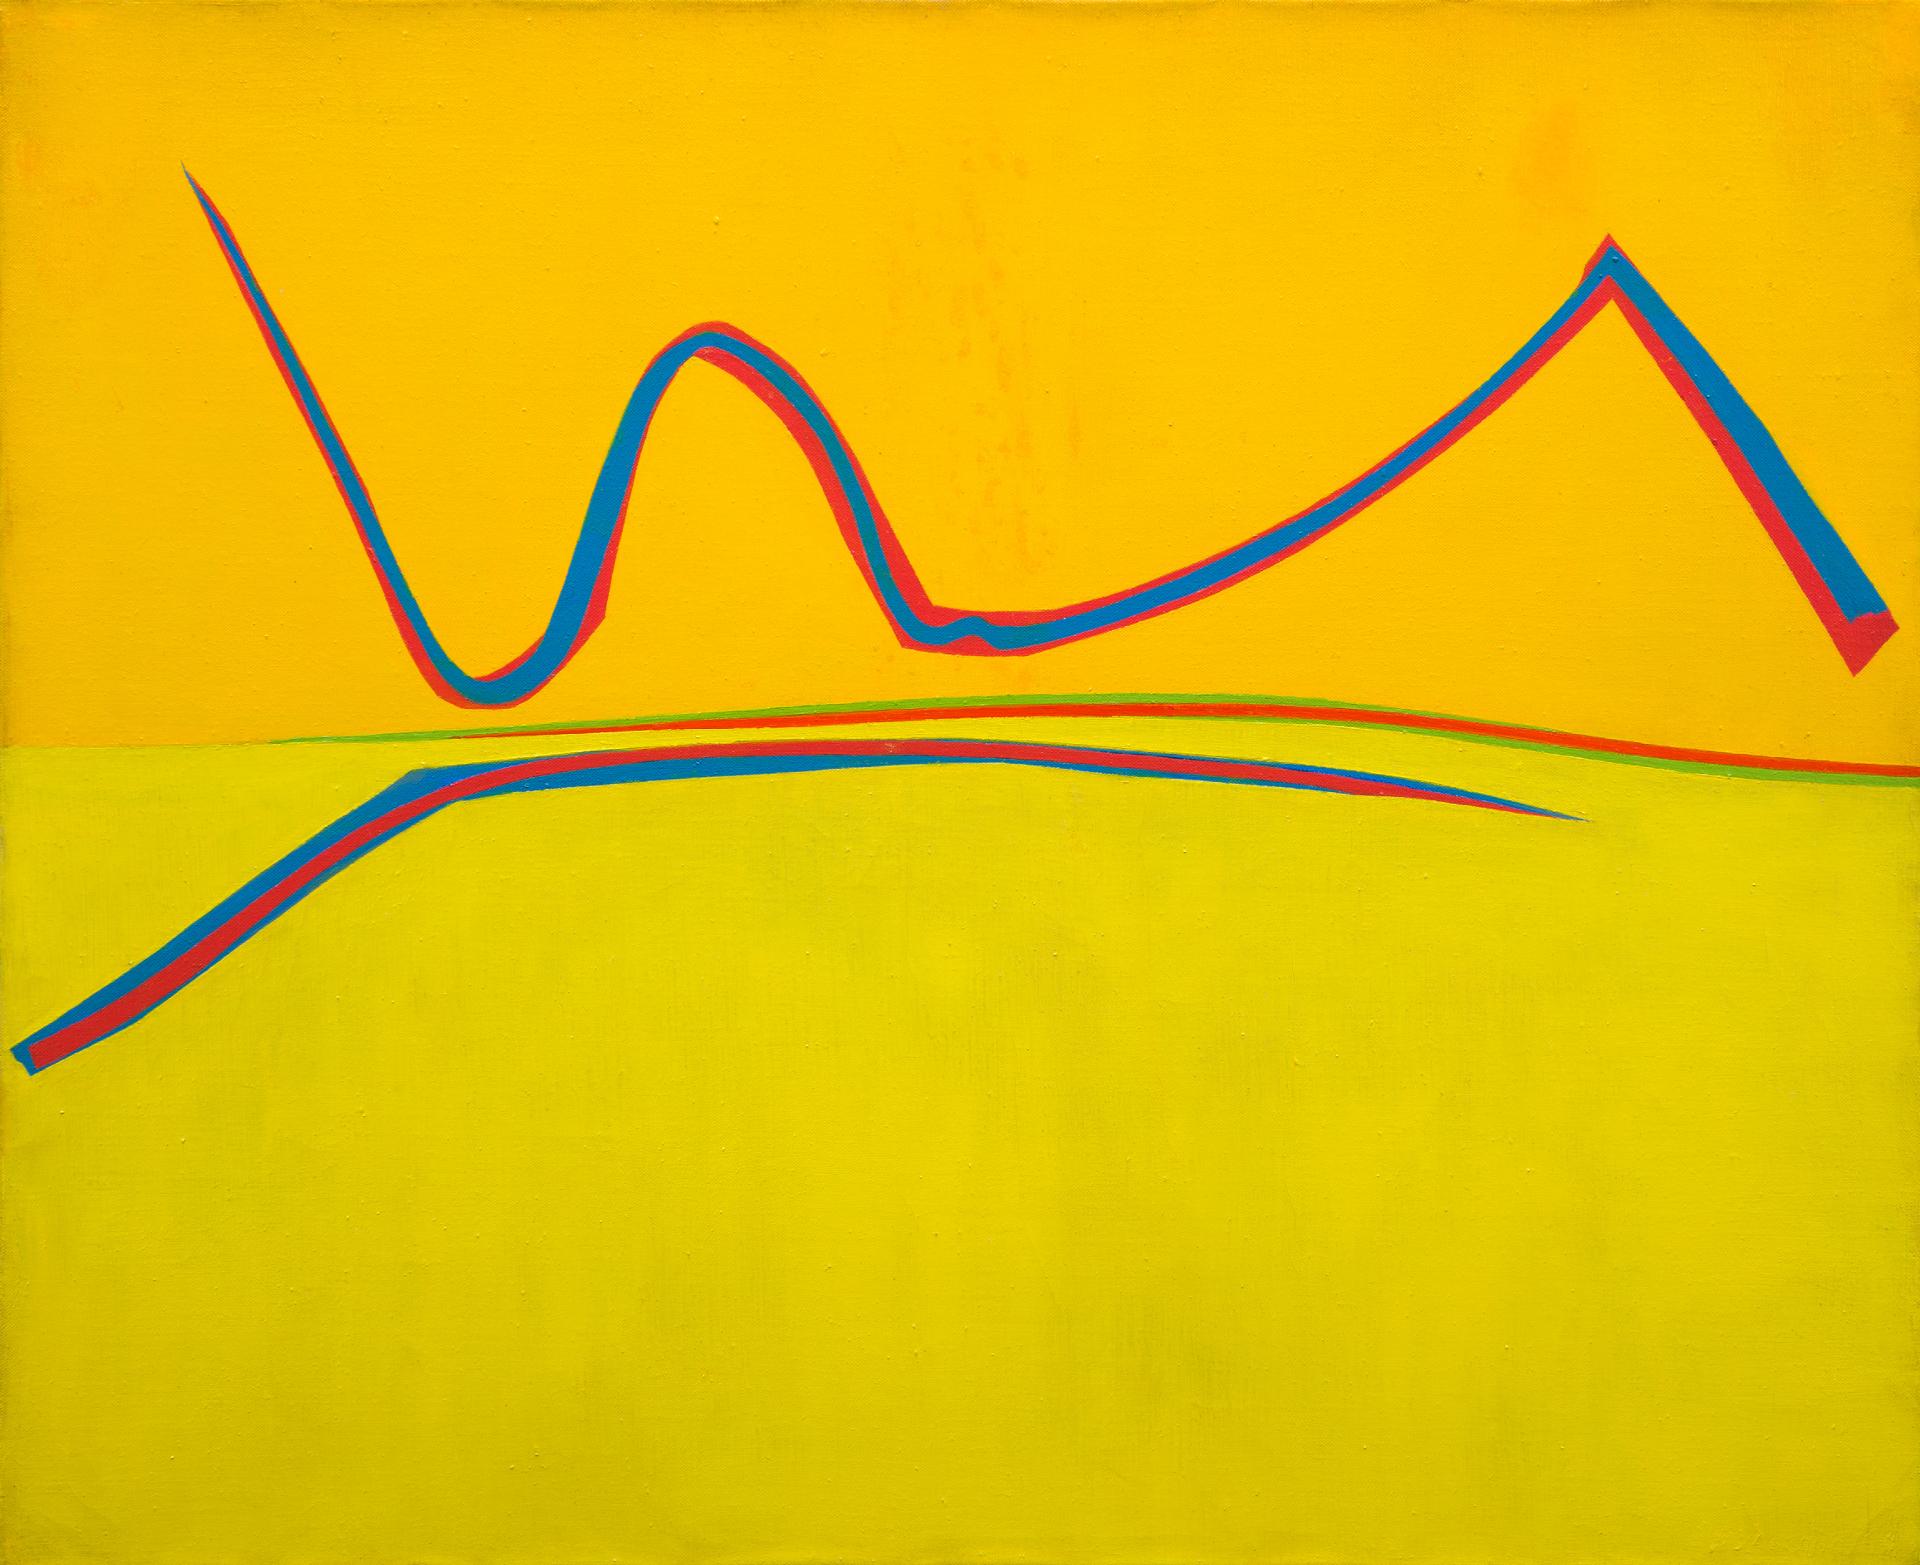 Fernand Leduc (1916-2014) - Vibrations sur jaune, 1963